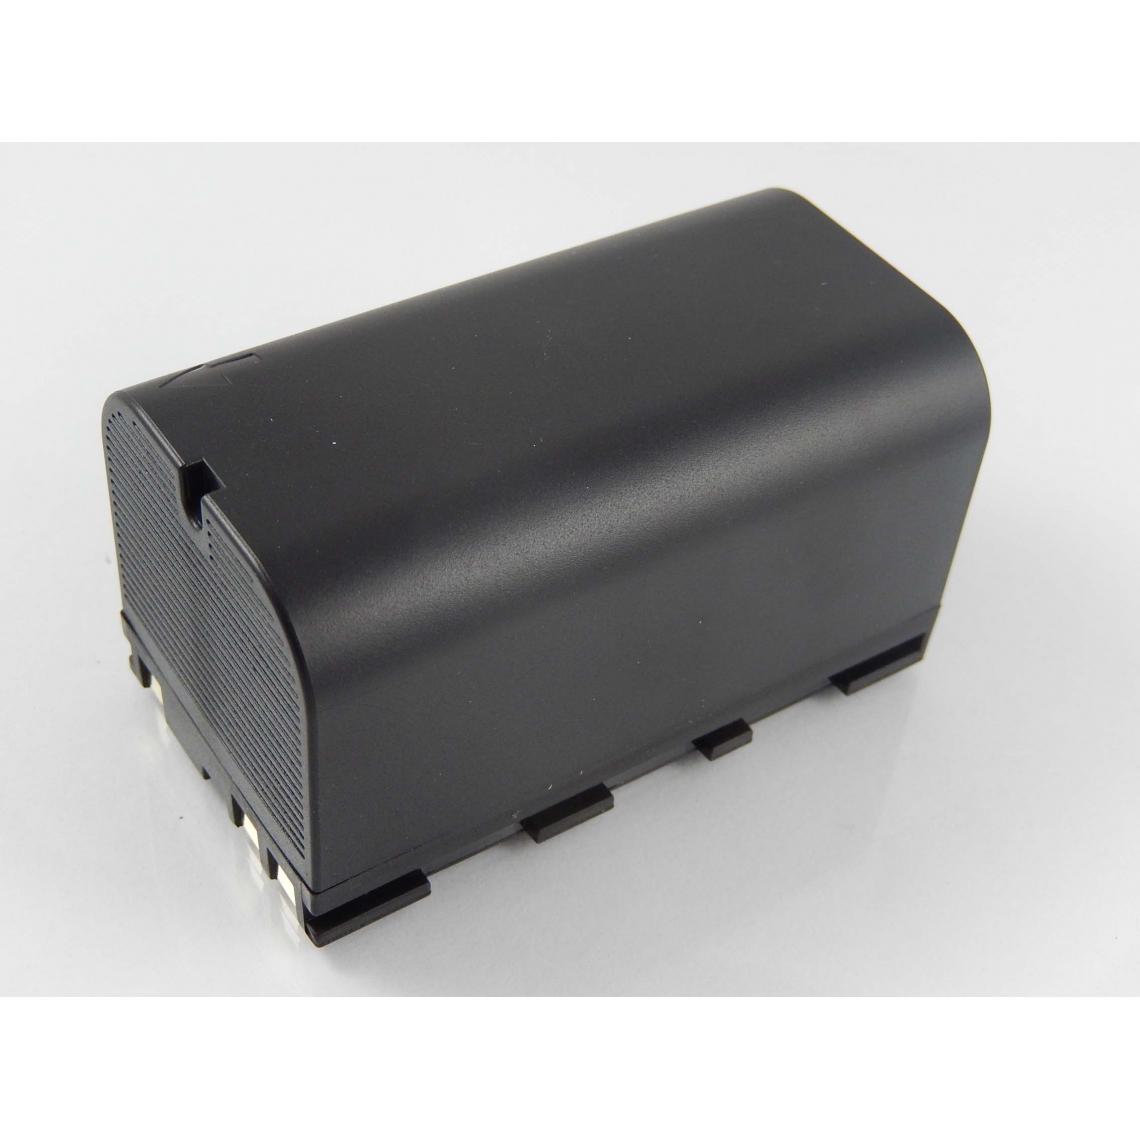 Vhbw - vhbw Batterie compatible avec Geomax Zoom 20, Zoom 30, Zoom 35 dispositif de mesure laser, outil de mesure (5600mAh, 7,4V, Li-ion) - Piles rechargeables